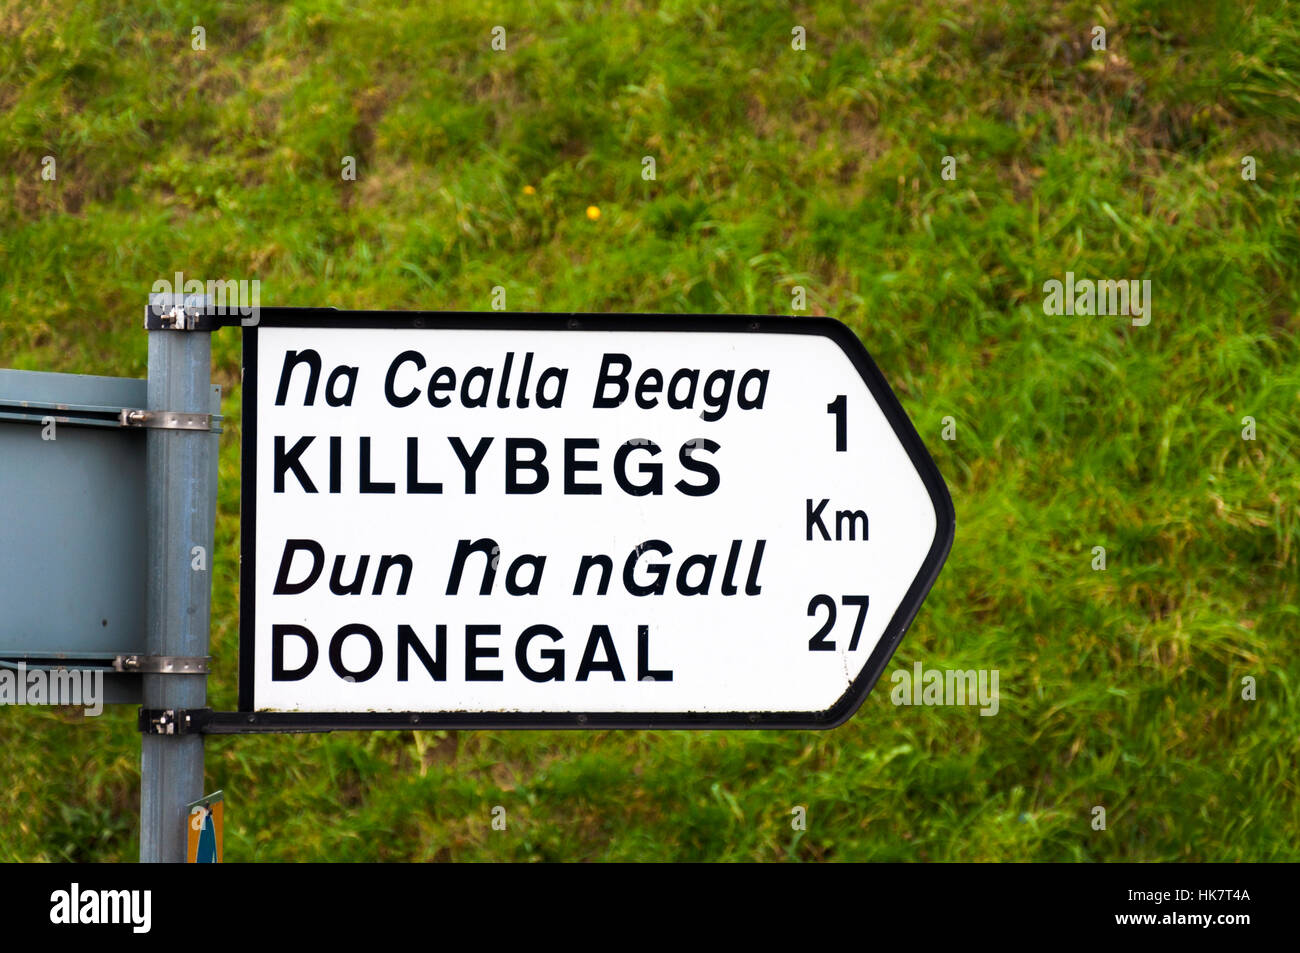 Signo de letreros en inglés y en gaélico irlandés Killybegs y Donegal Town Foto de stock